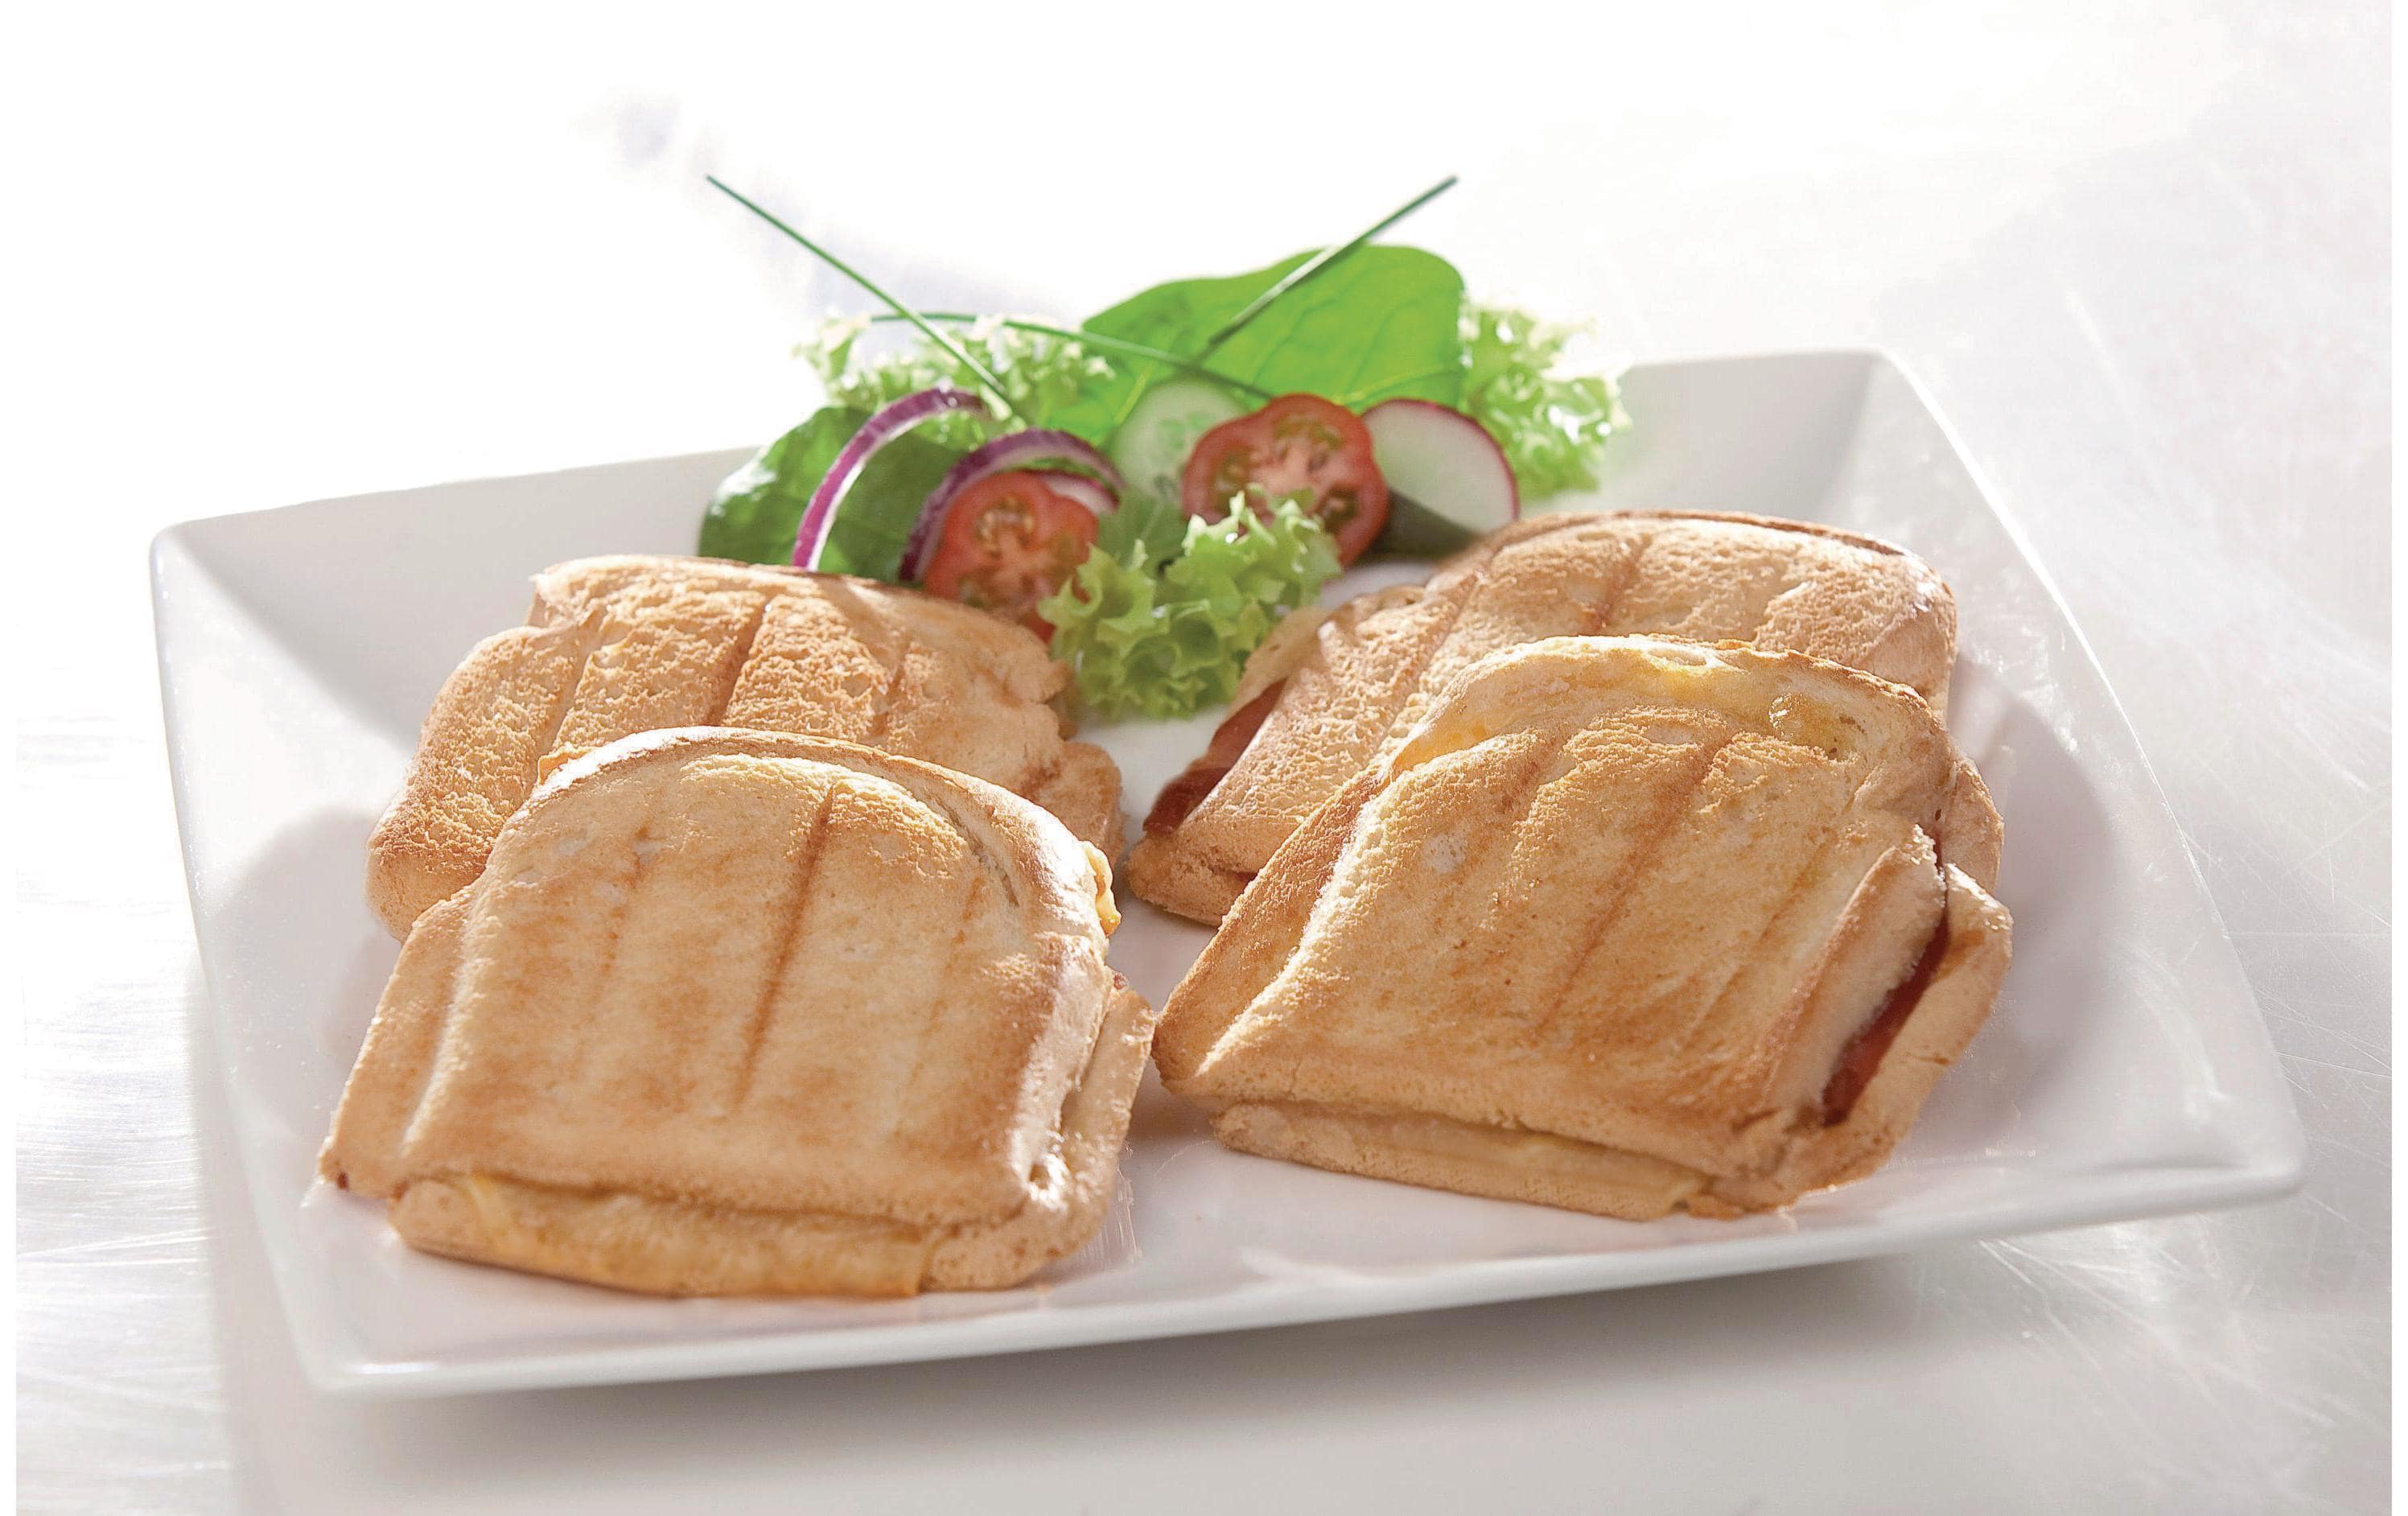 Domo Sandwich-Toaster DO9046C 1200 W